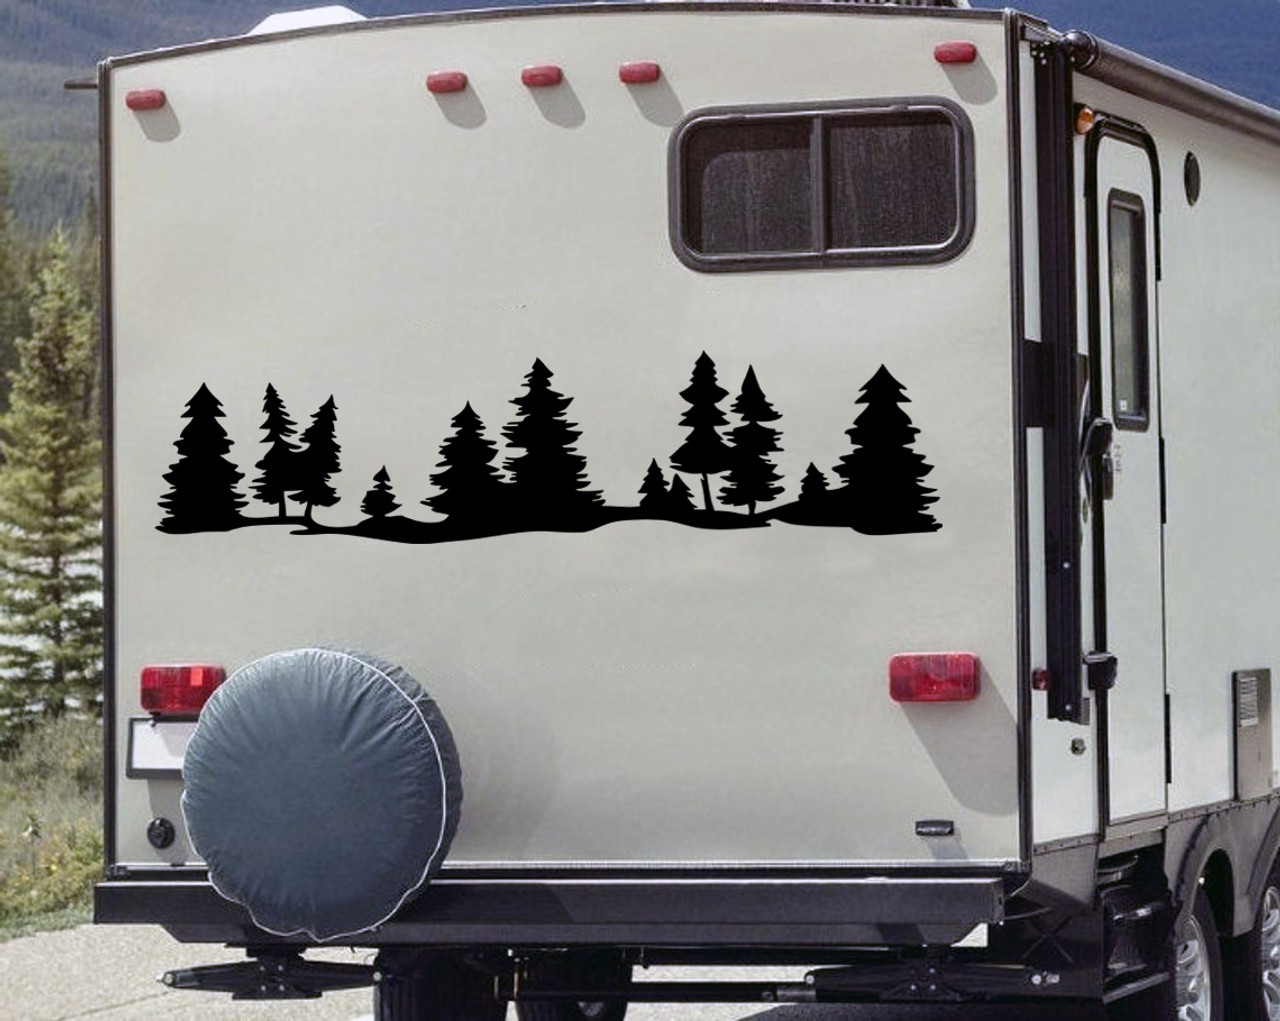 Trees Forest Scene Vinyl Decal - Tree Line RV Camper Trailer - Die Cut Sticker